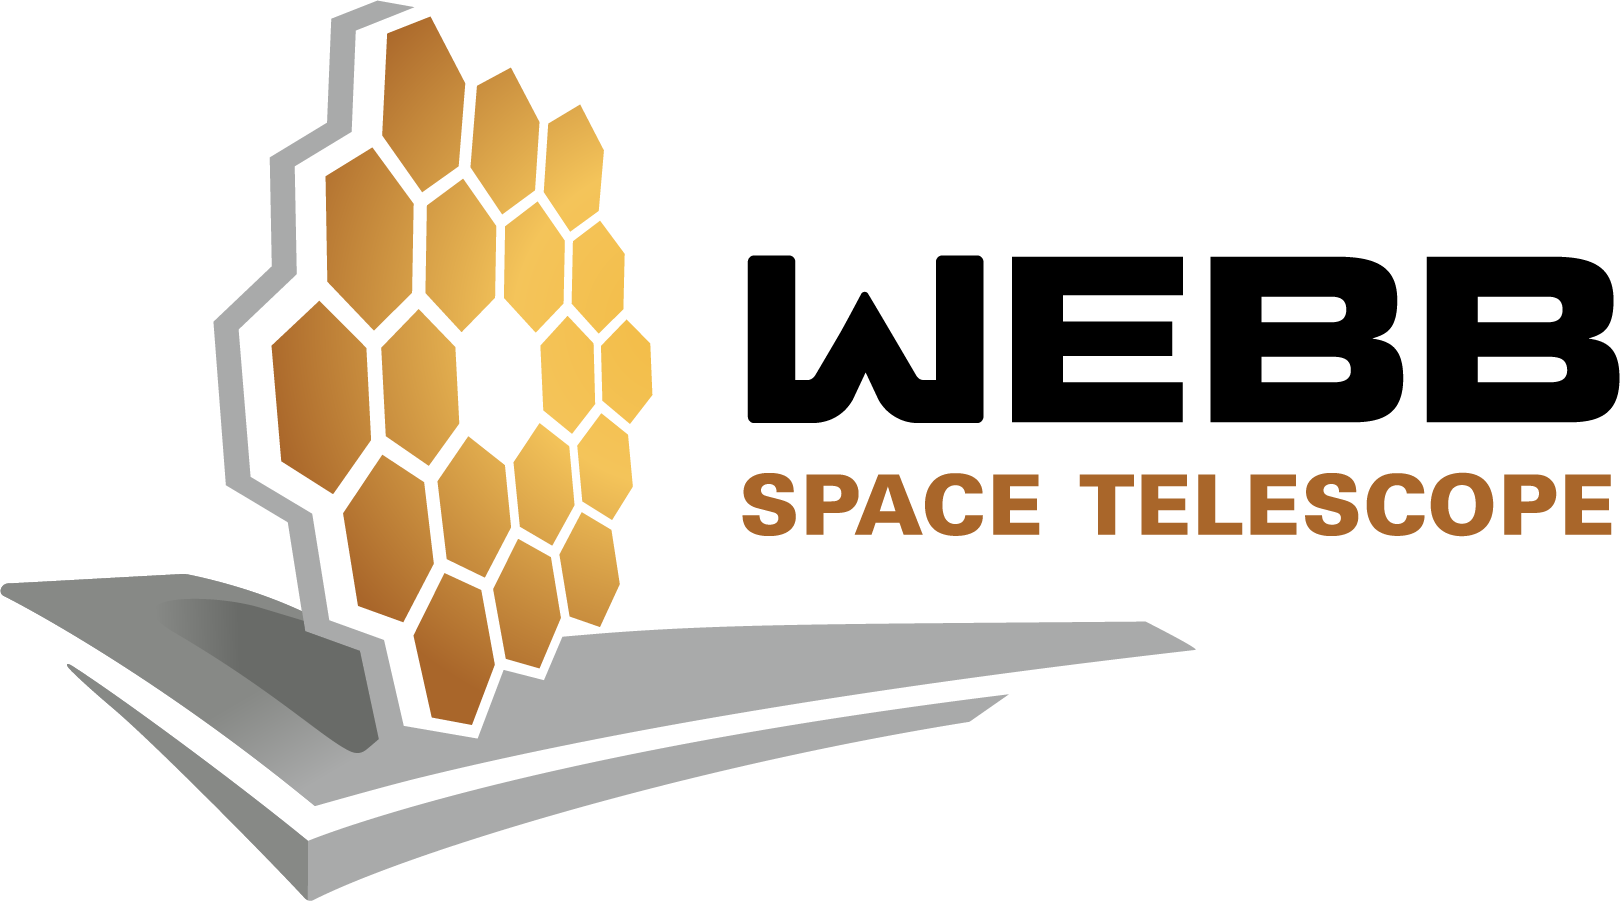 Webb Space Telescope logo